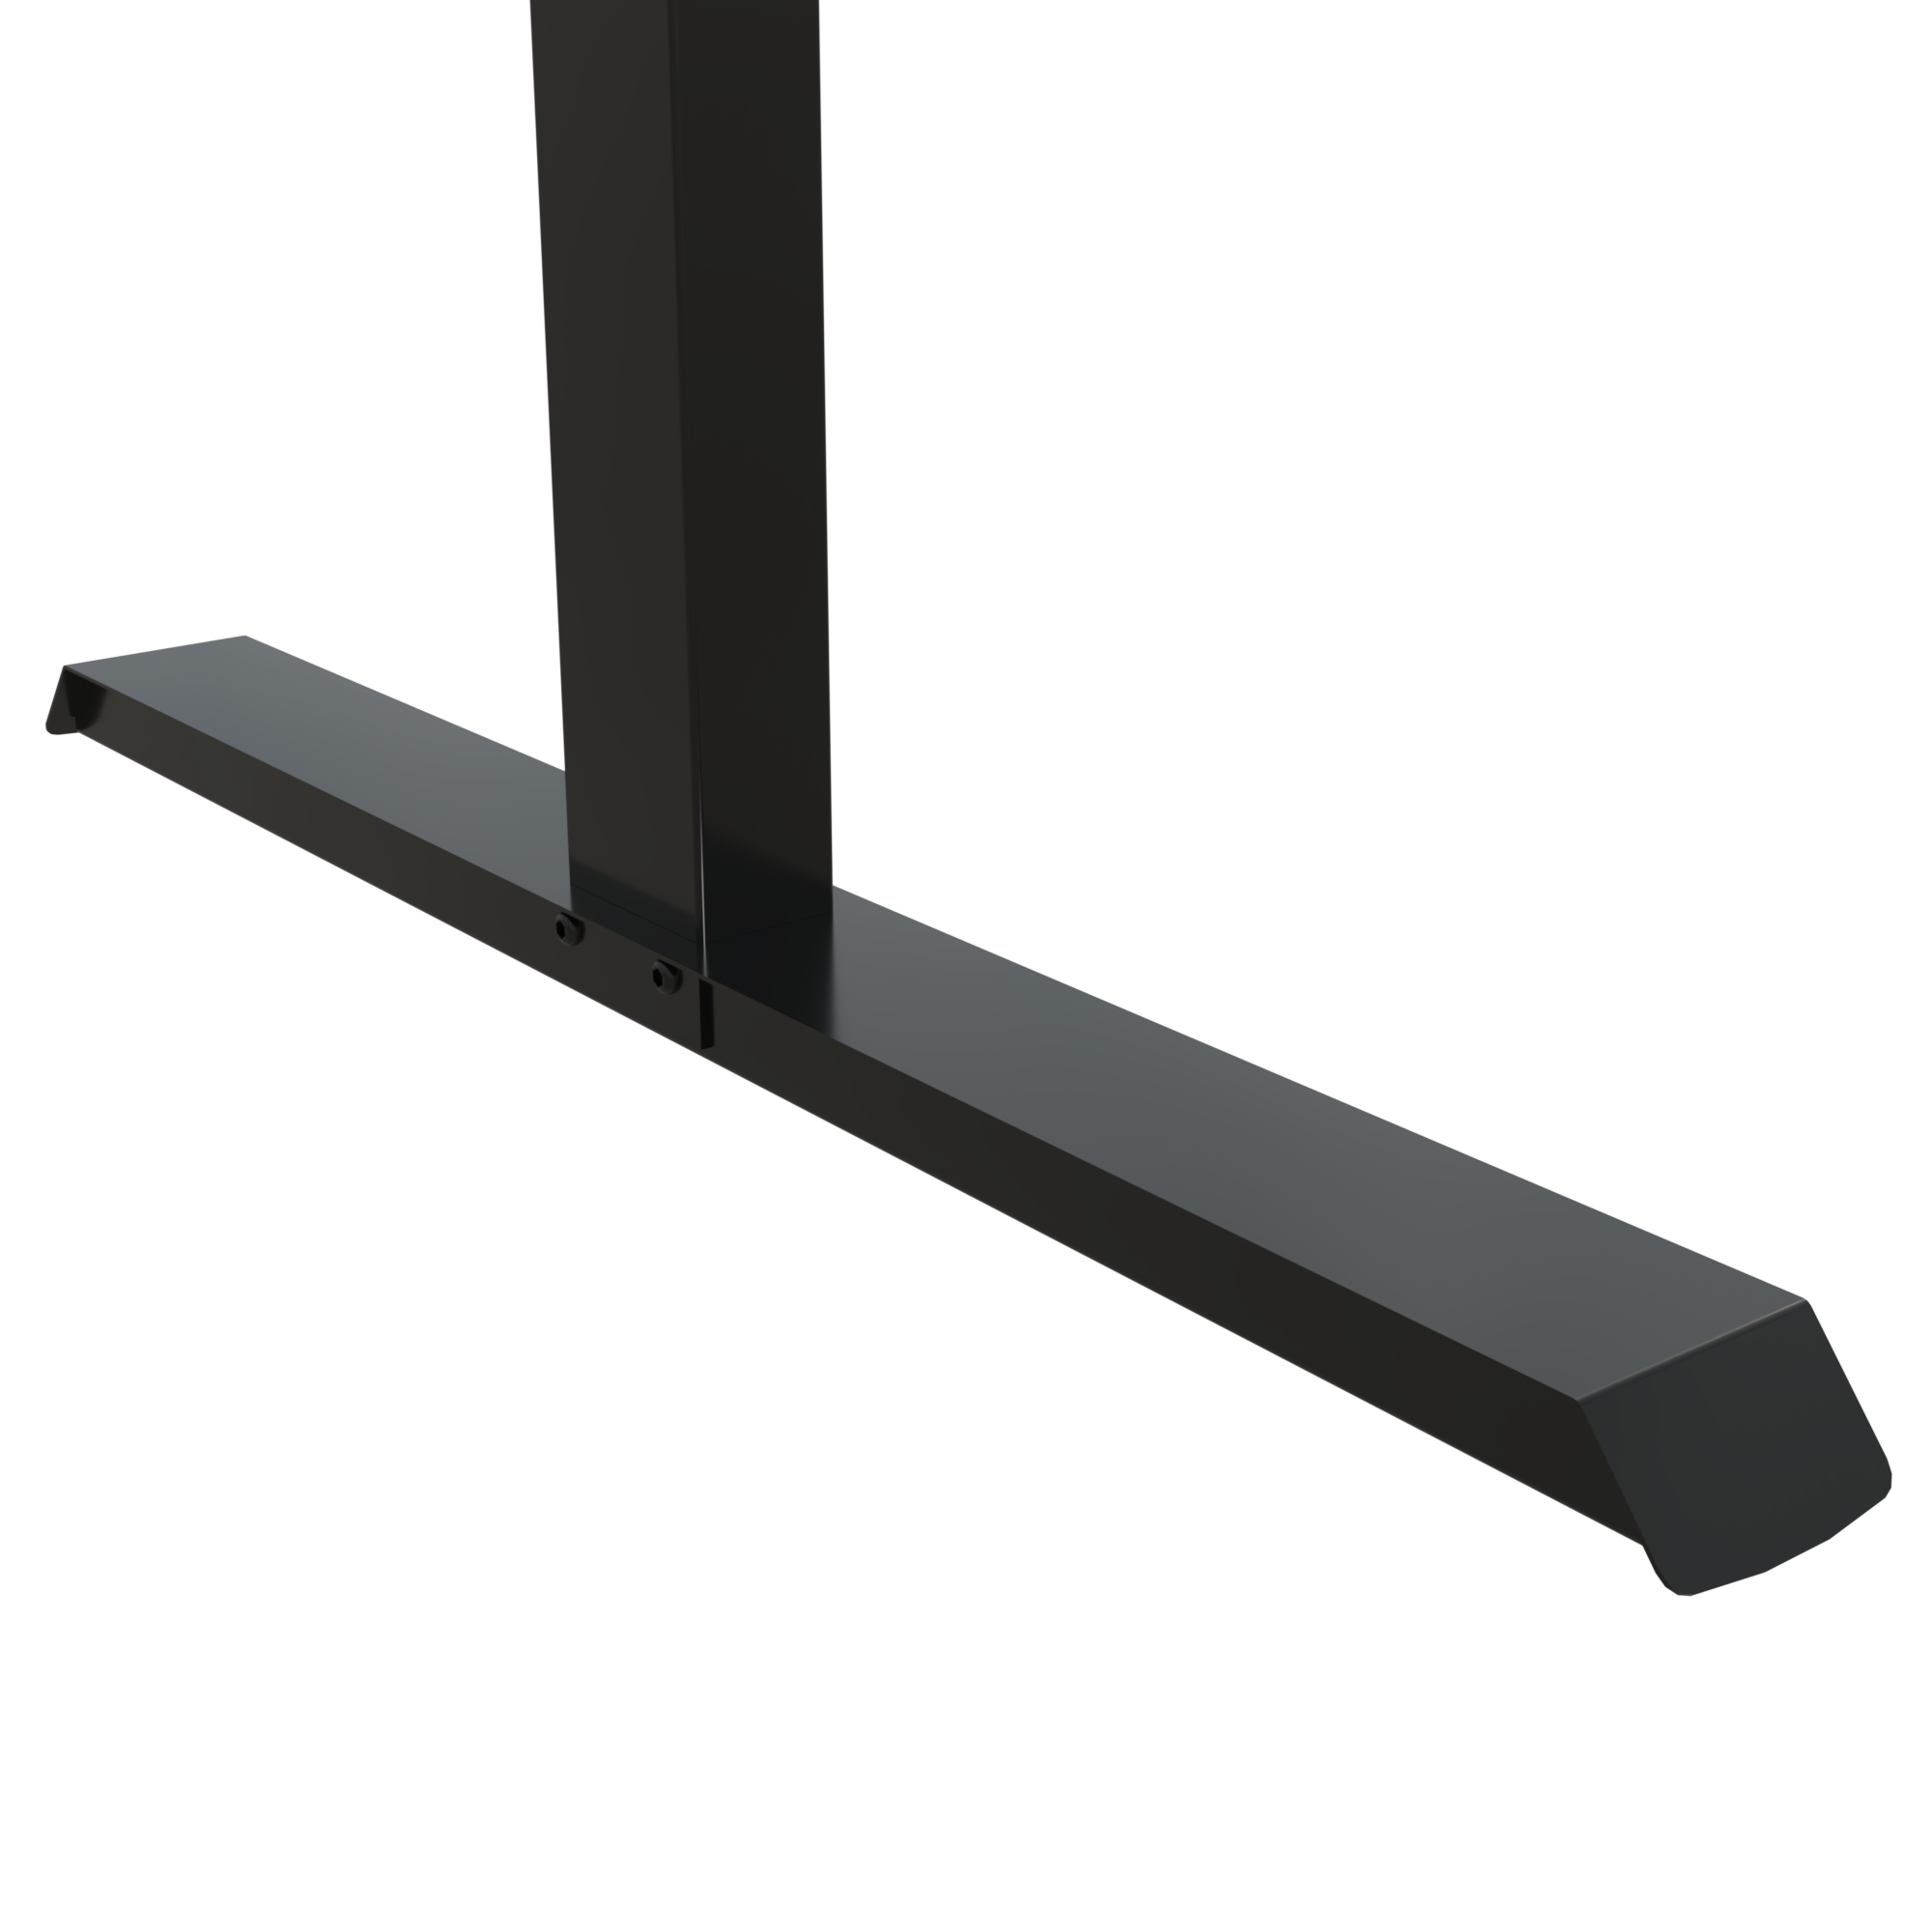 Schreibtisch steh/sitz | 160x80 cm | Nussbaum mit schwarzem Gestell